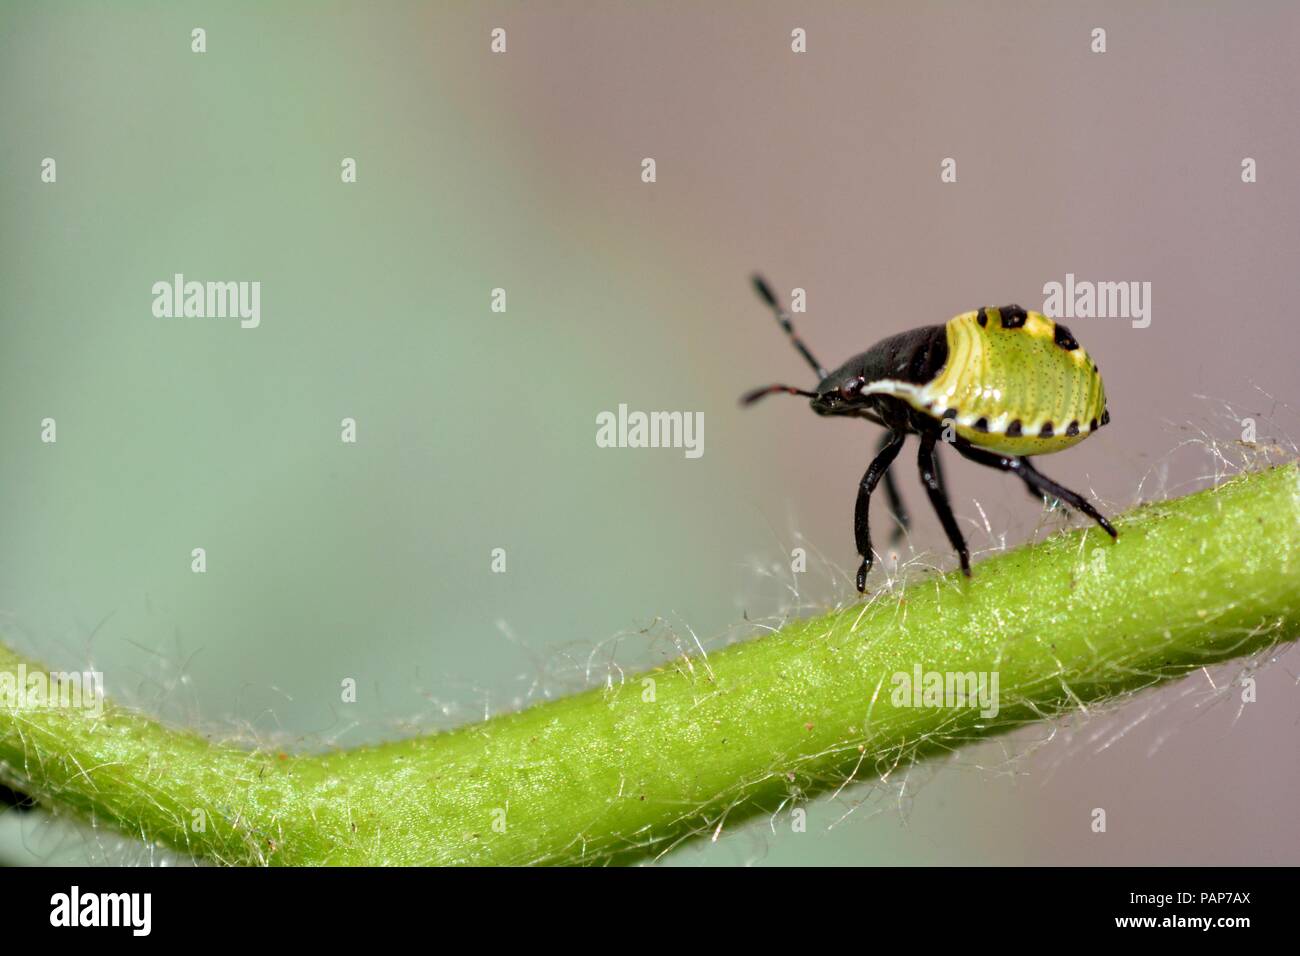 Nymph of a green stink bug   (  Palomena prasina  )  on plant with many copy space Stock Photo